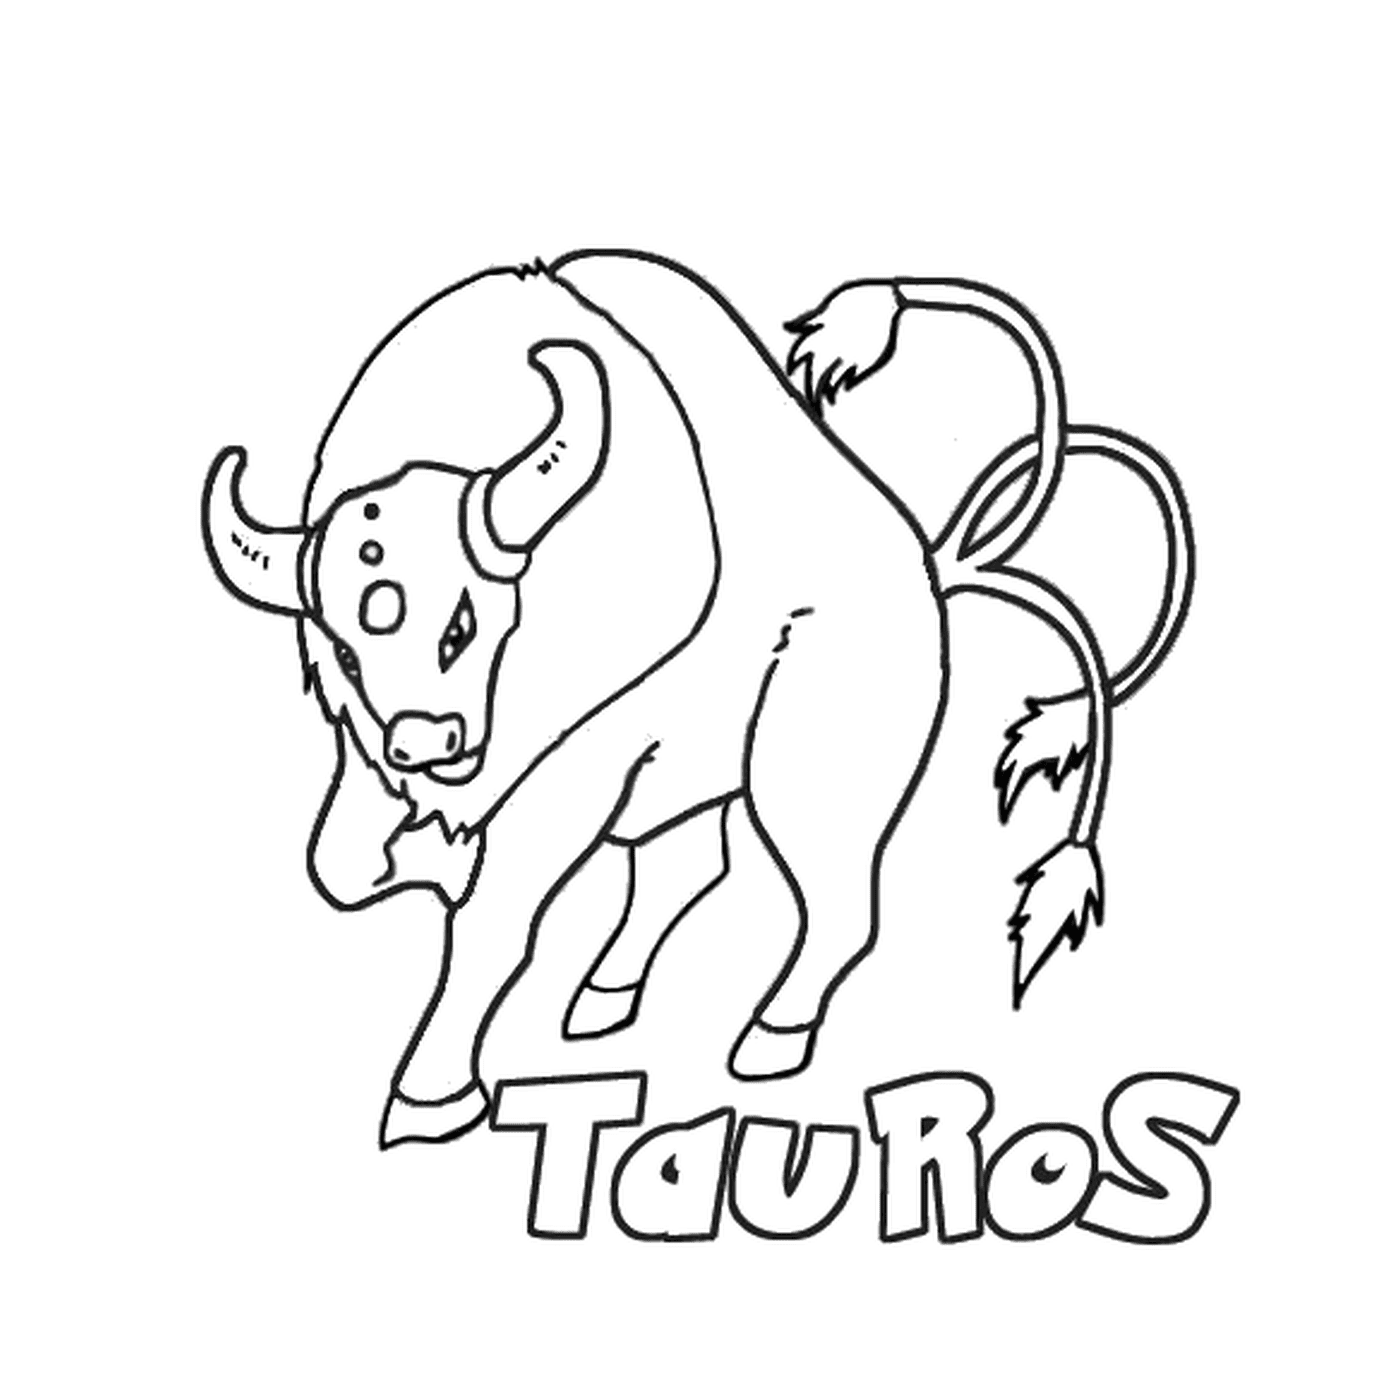  Таурос : Таурус со словом таурос, записанным ниже 